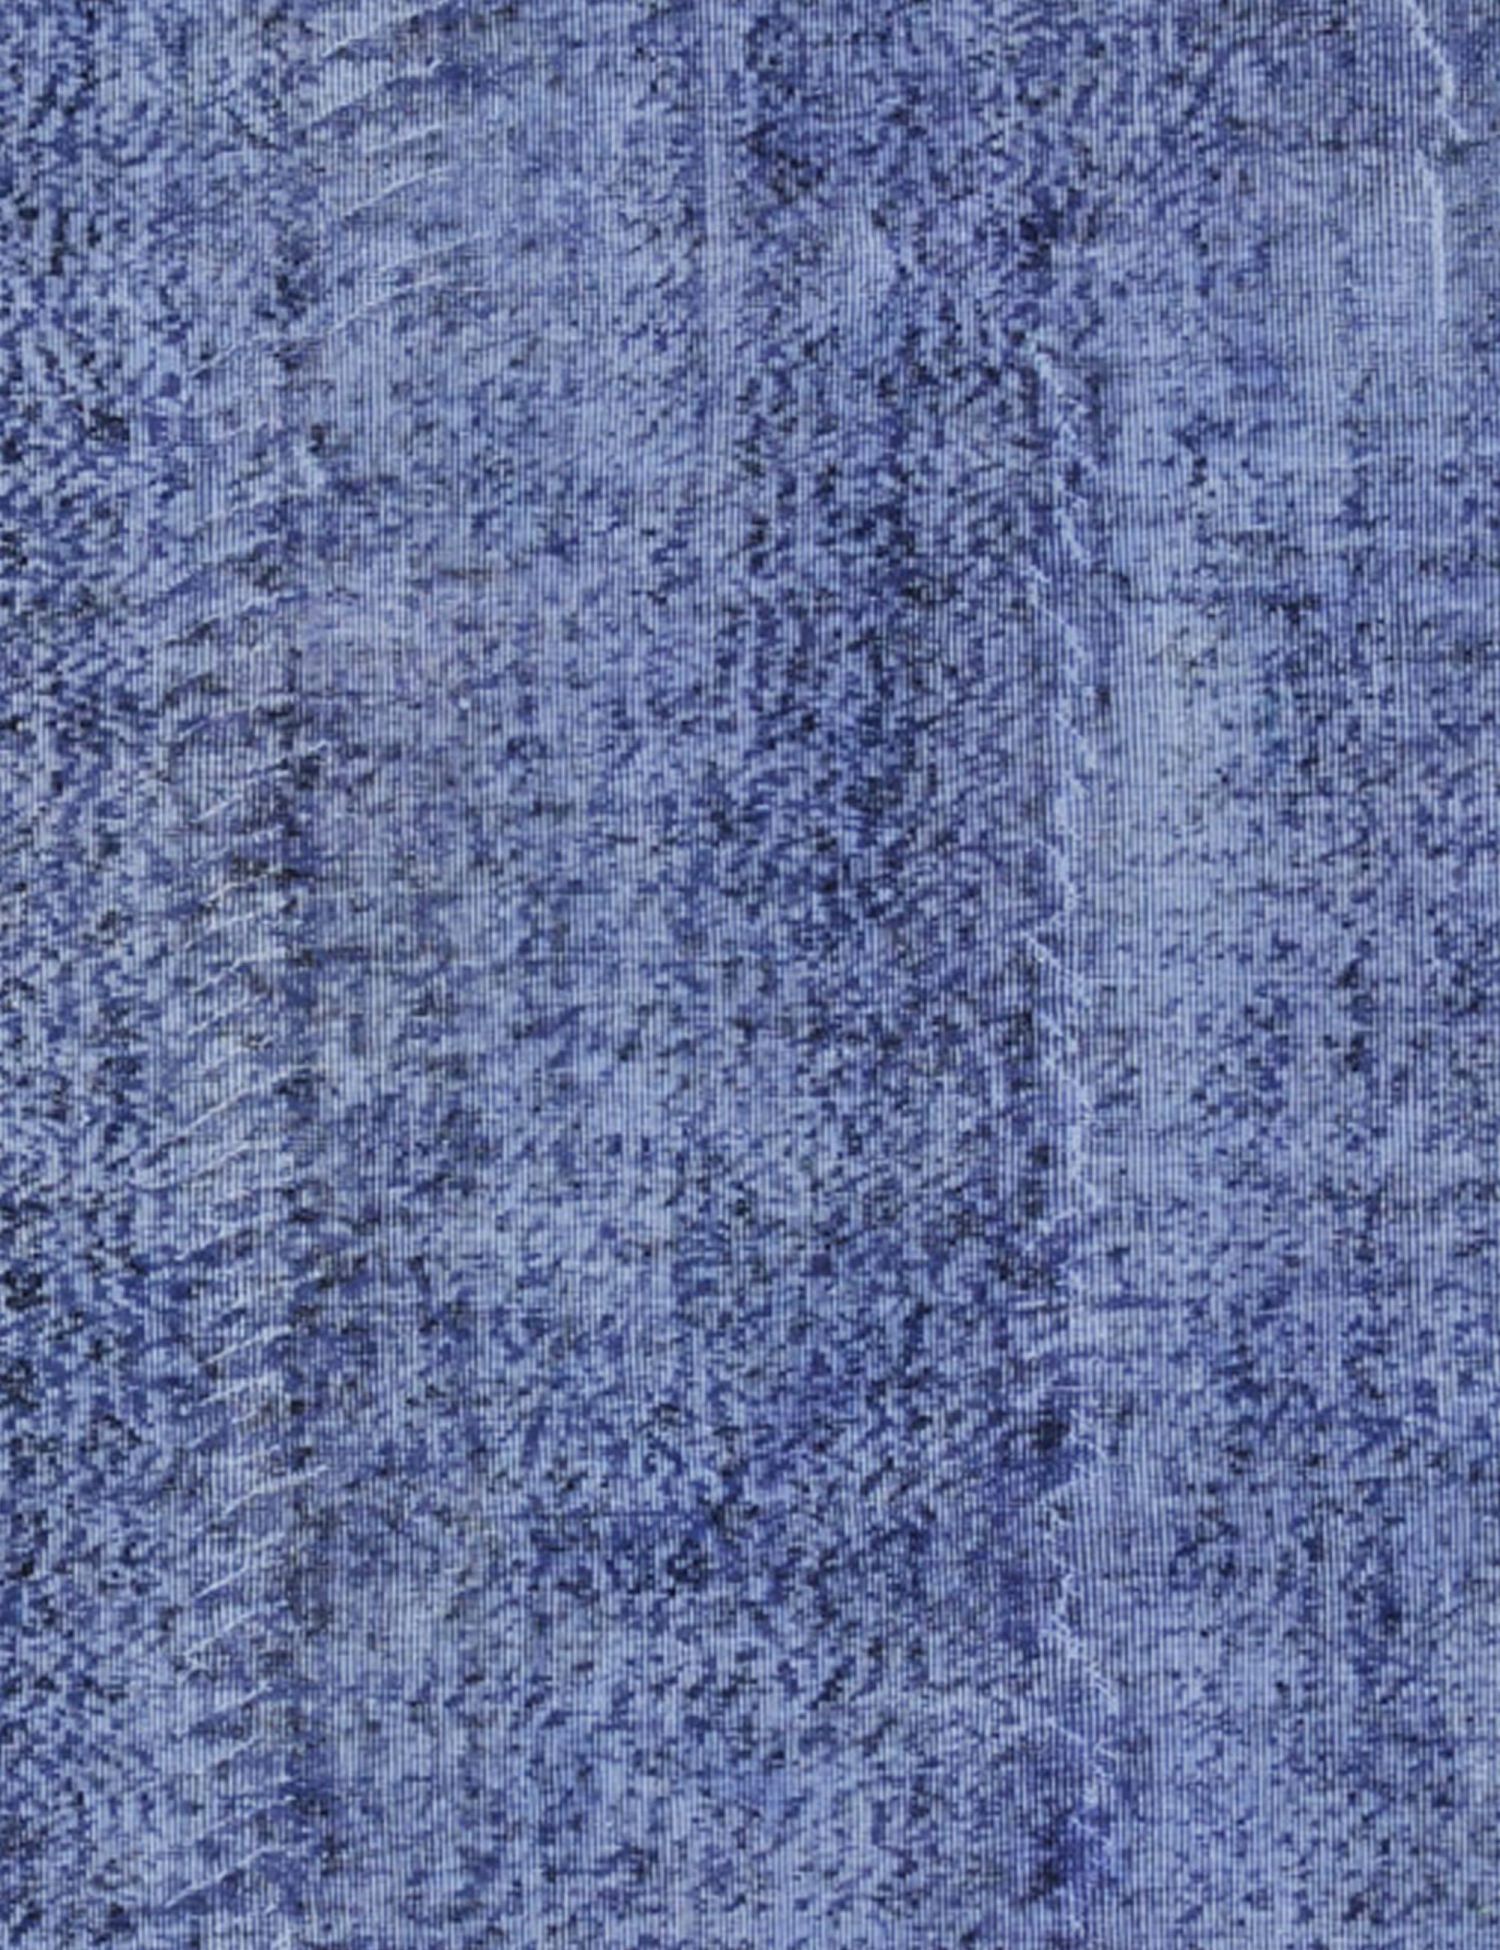 Vintage Teppich  blau <br/>192 x 192 cm